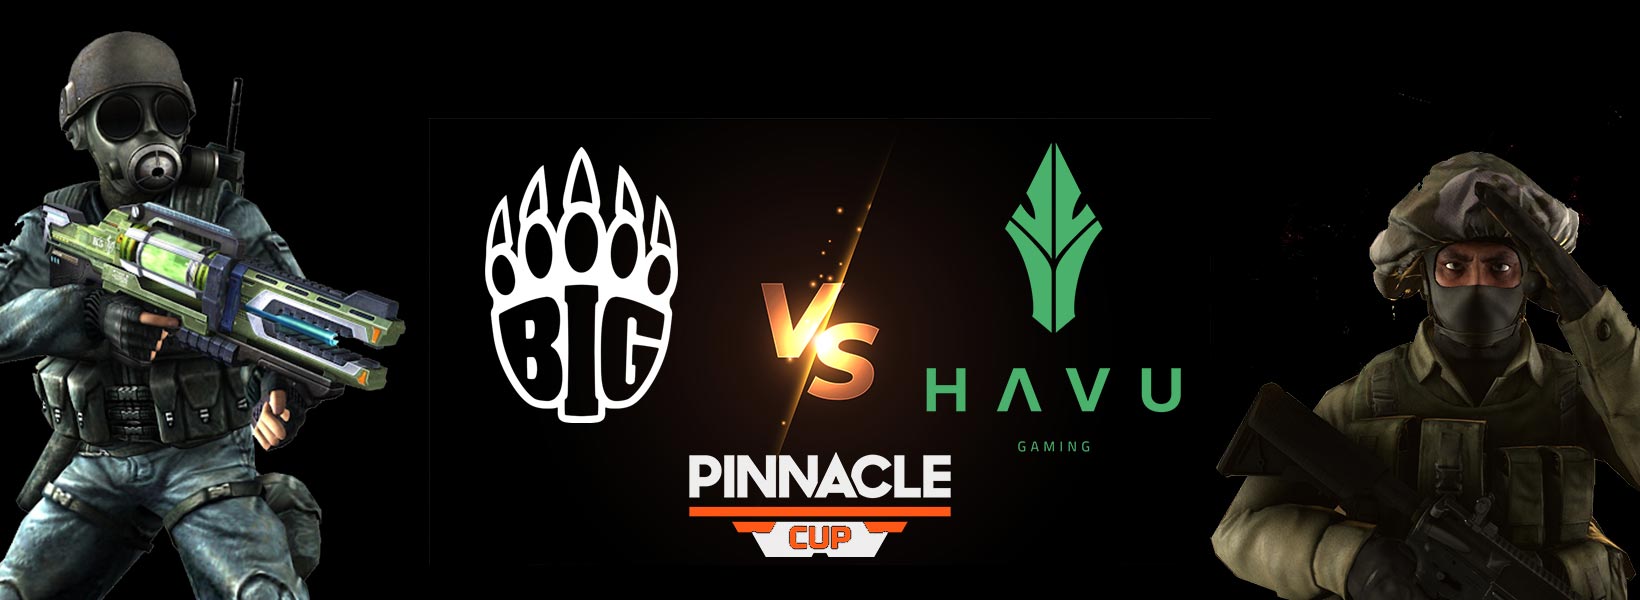 HAVU VS BIG Pinnacle Cup 2021